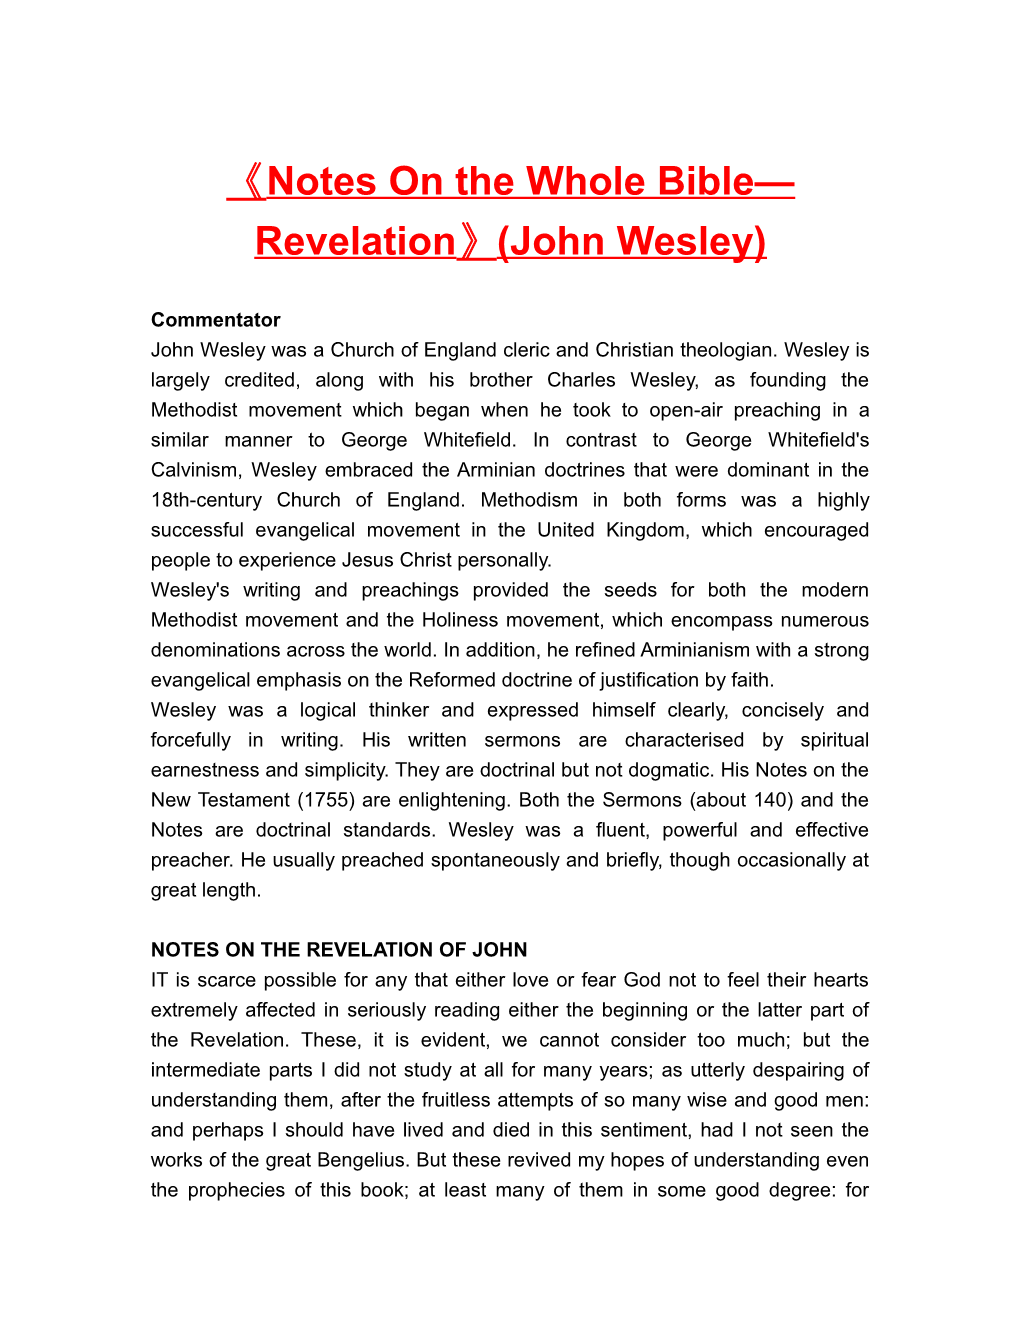 Notes on the Whole Bible Revelation (John Wesley)